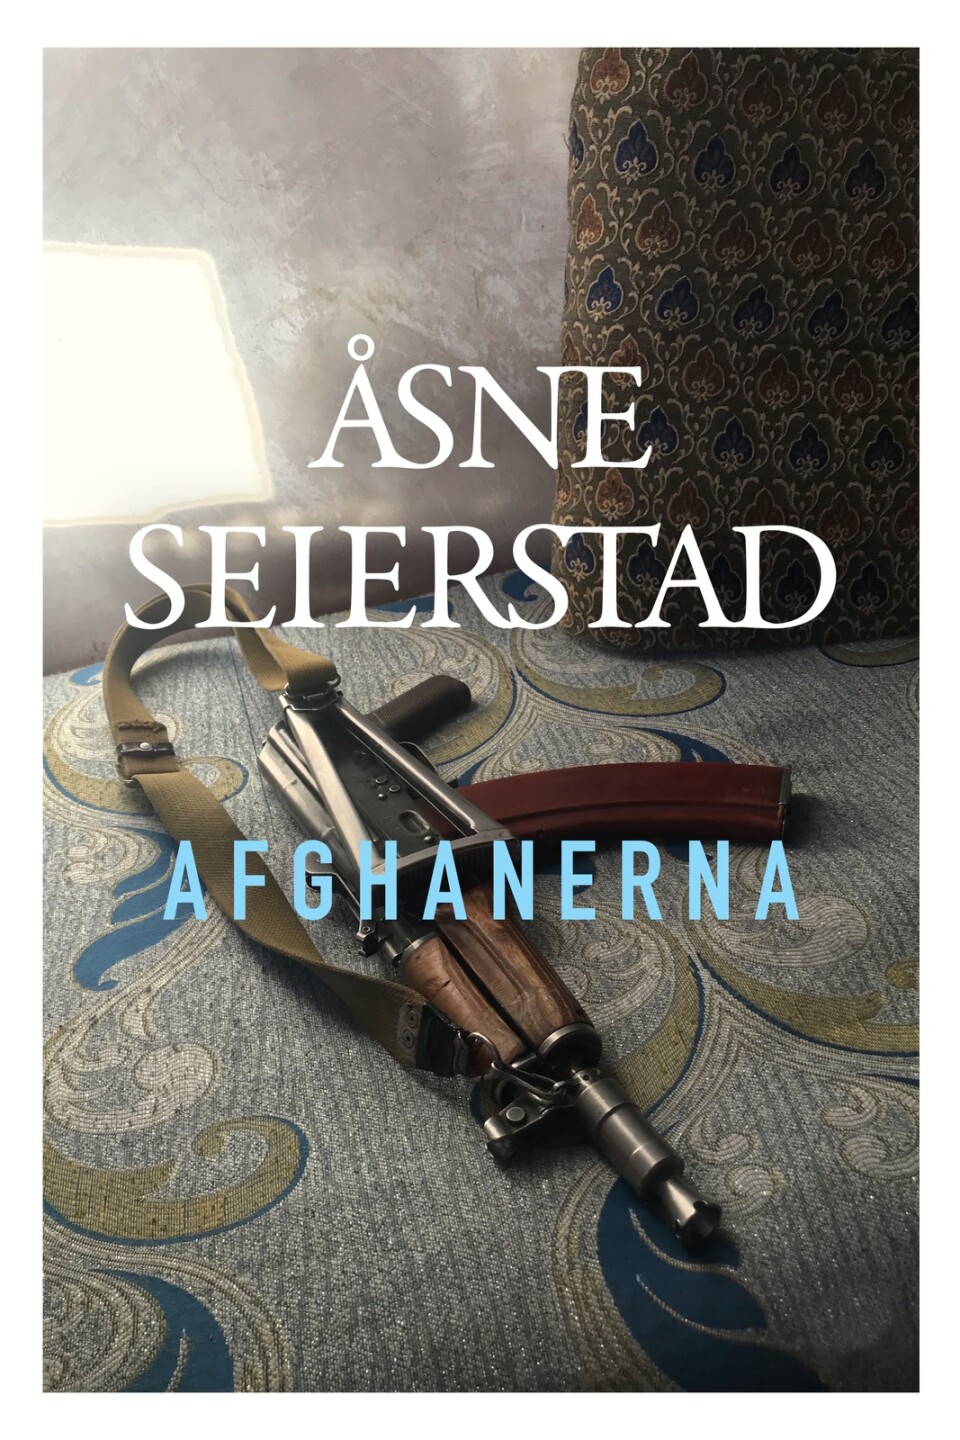 Åsne Seierstad - ”Afghanerna”